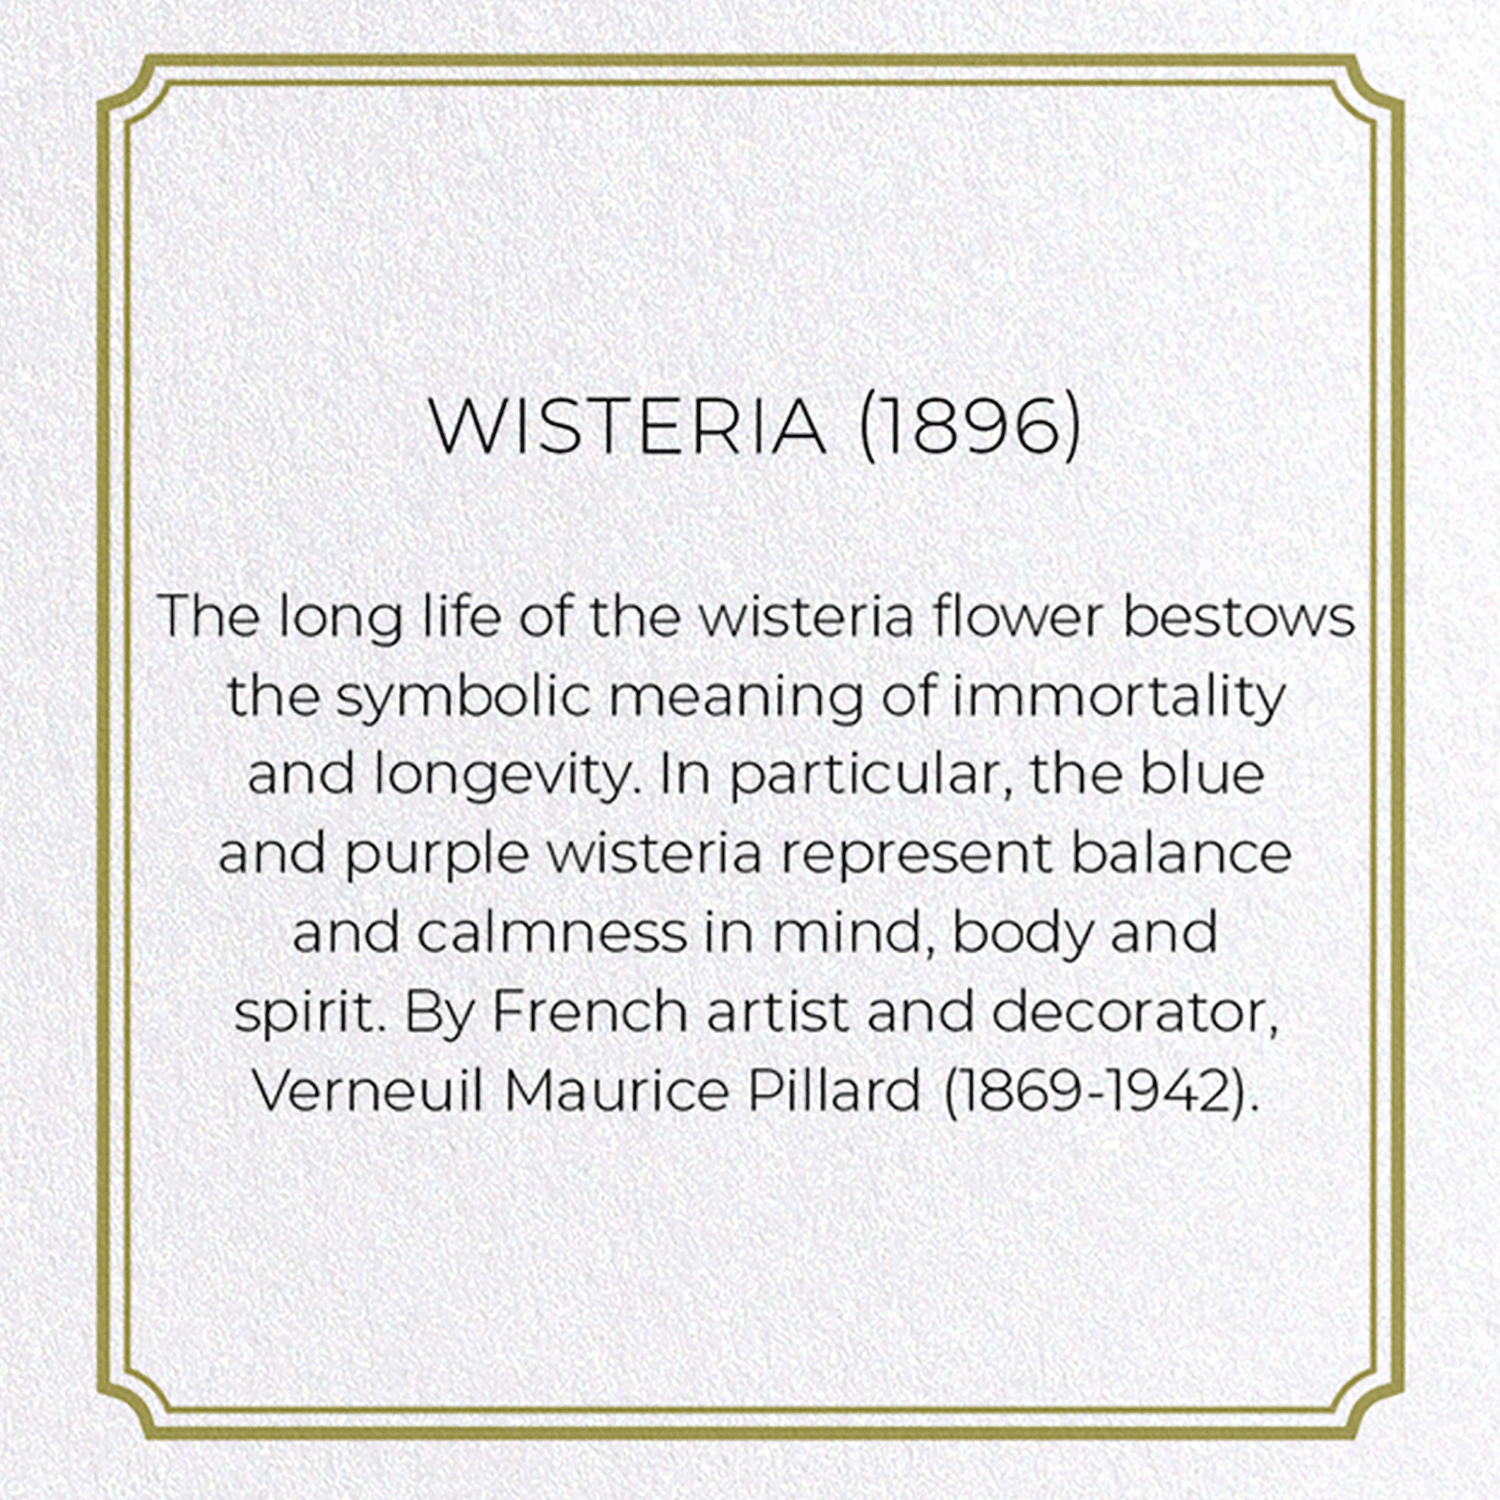 WISTERIA (1896)